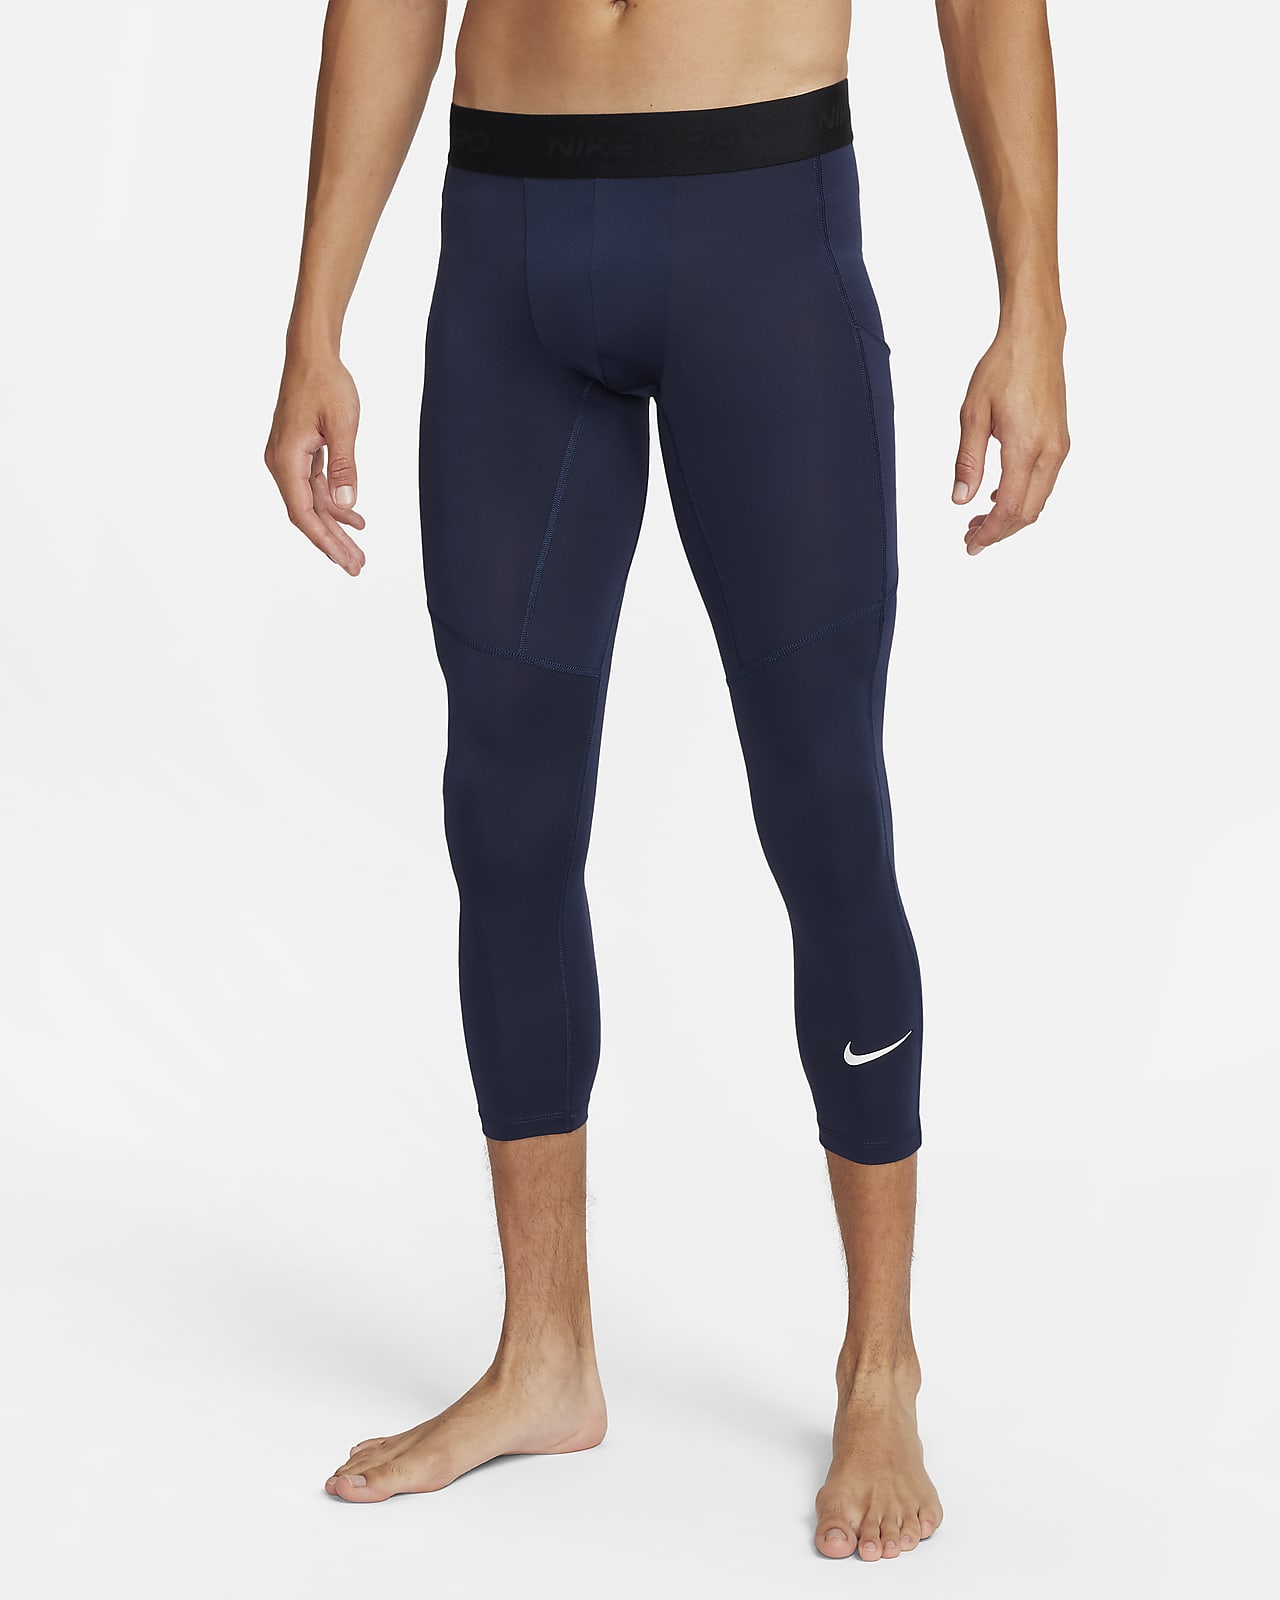 Nike Women's Pro Tight (Black/White, X-Small) 